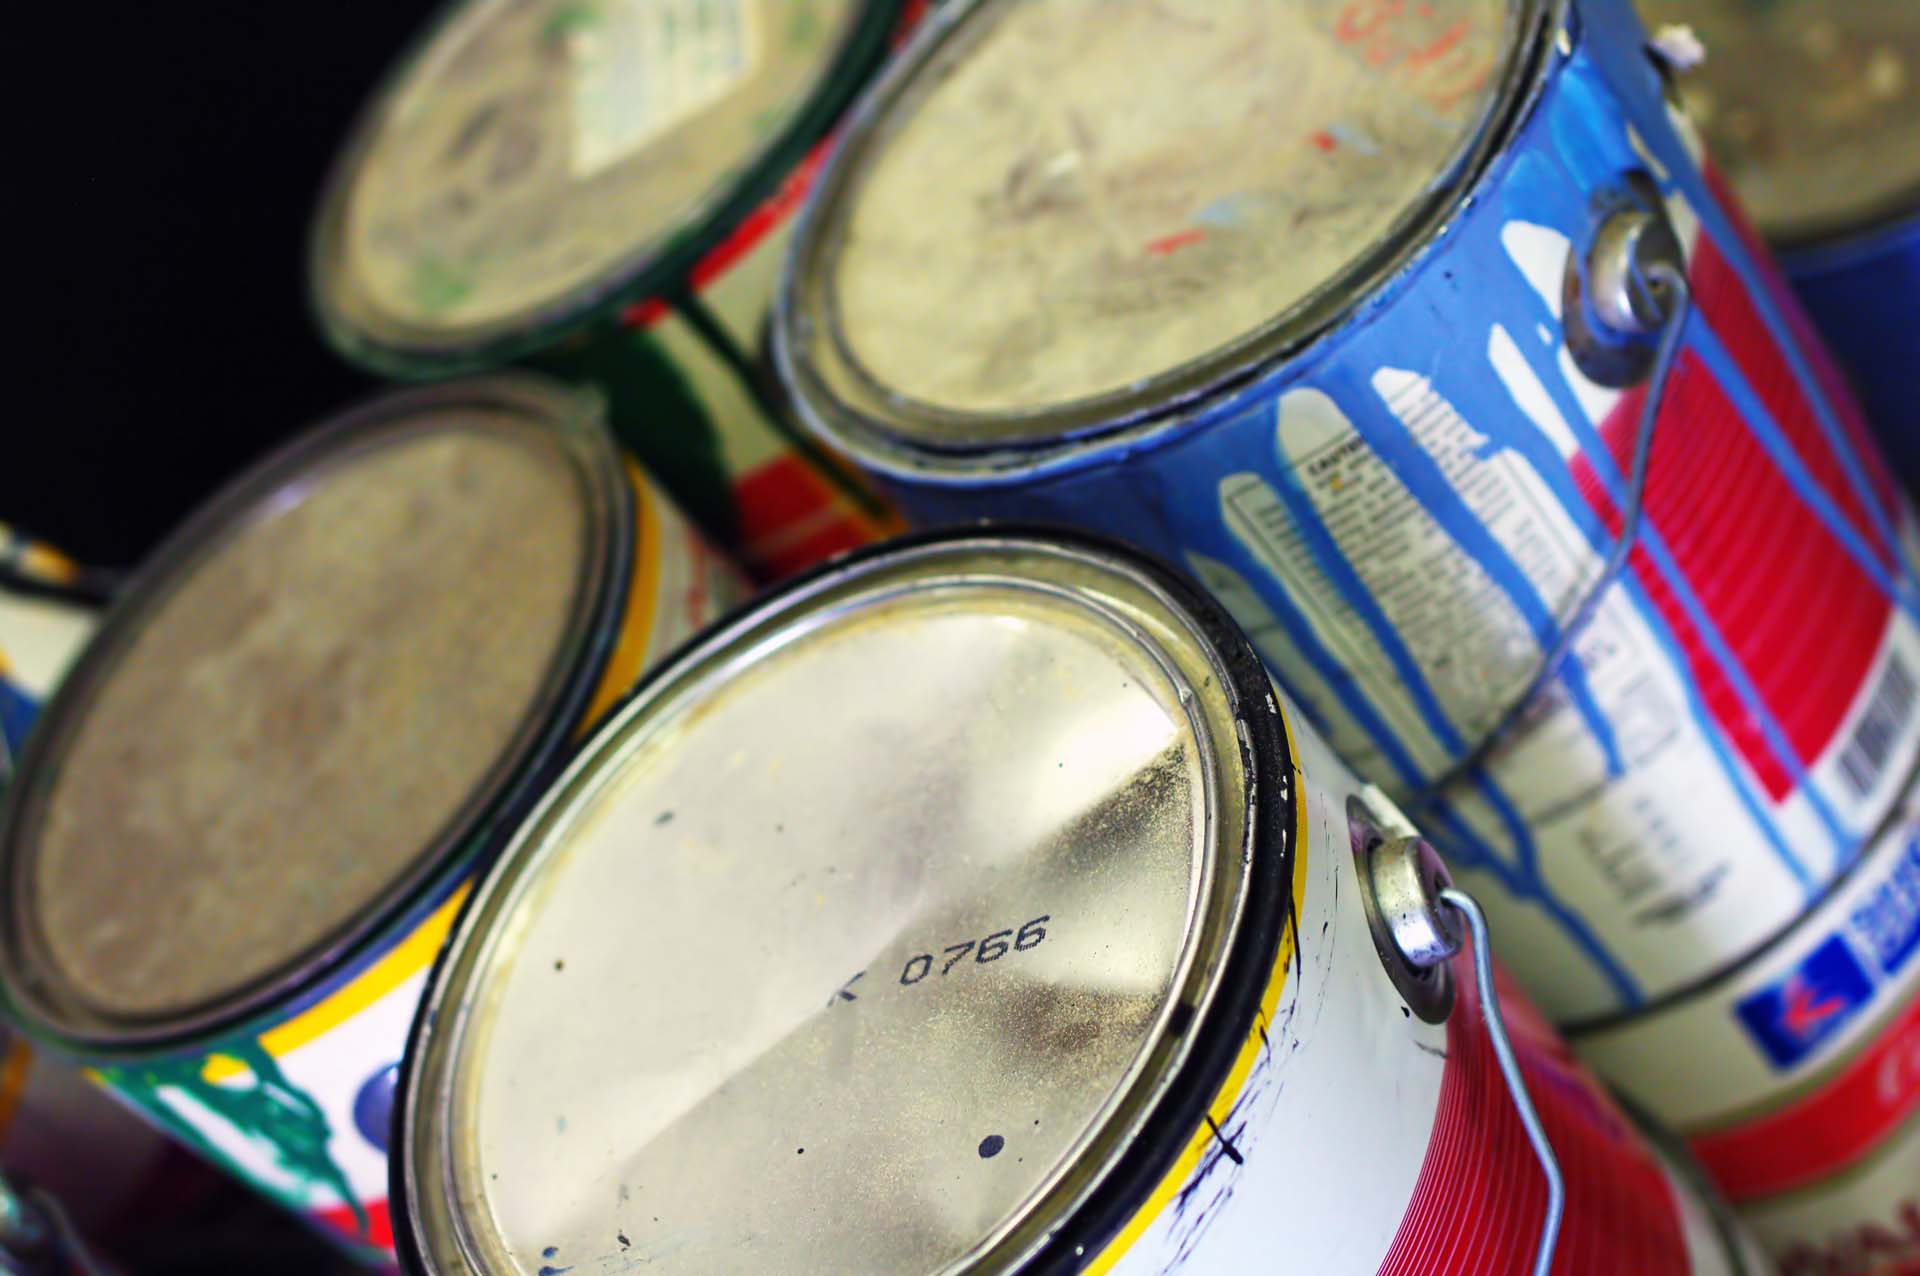 Empty paint cans